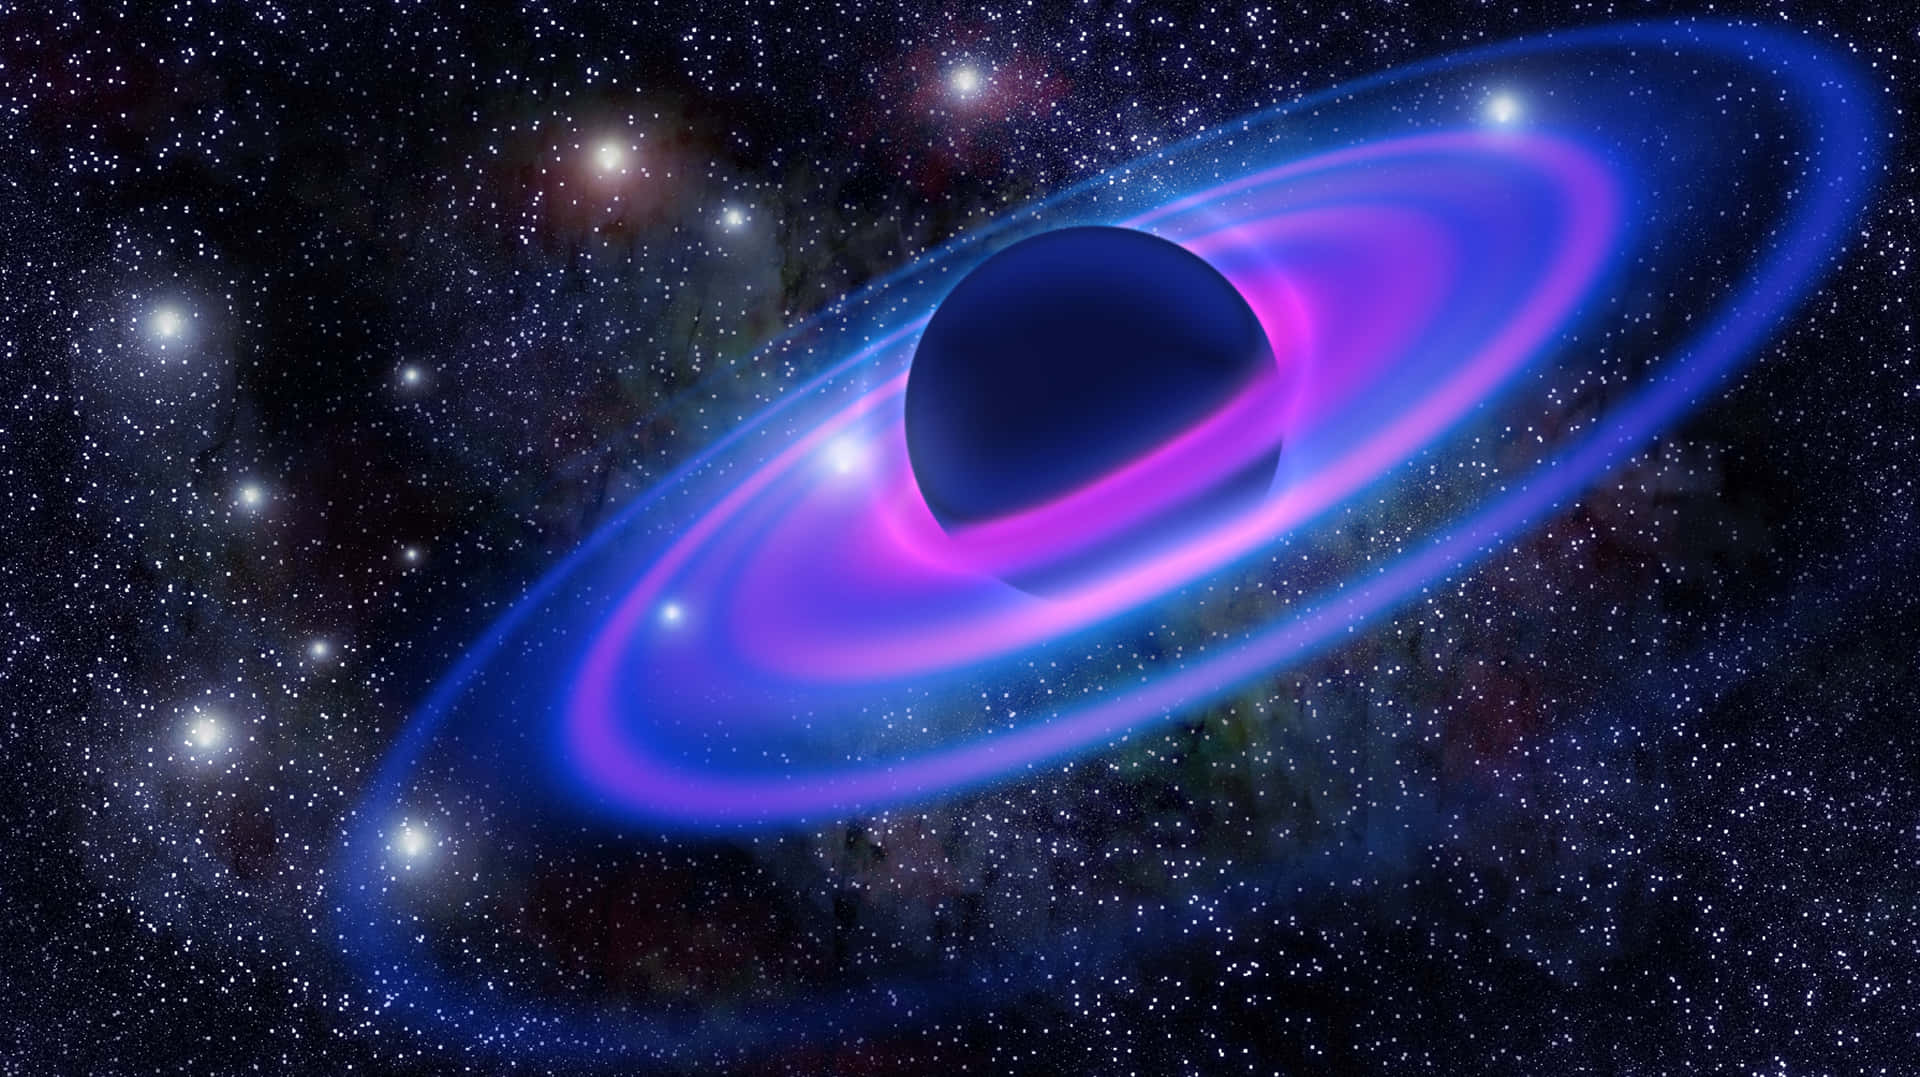 Einschwarzes Loch Im Weltraum Mit Einem Blauen Und Violetten Ring. Wallpaper